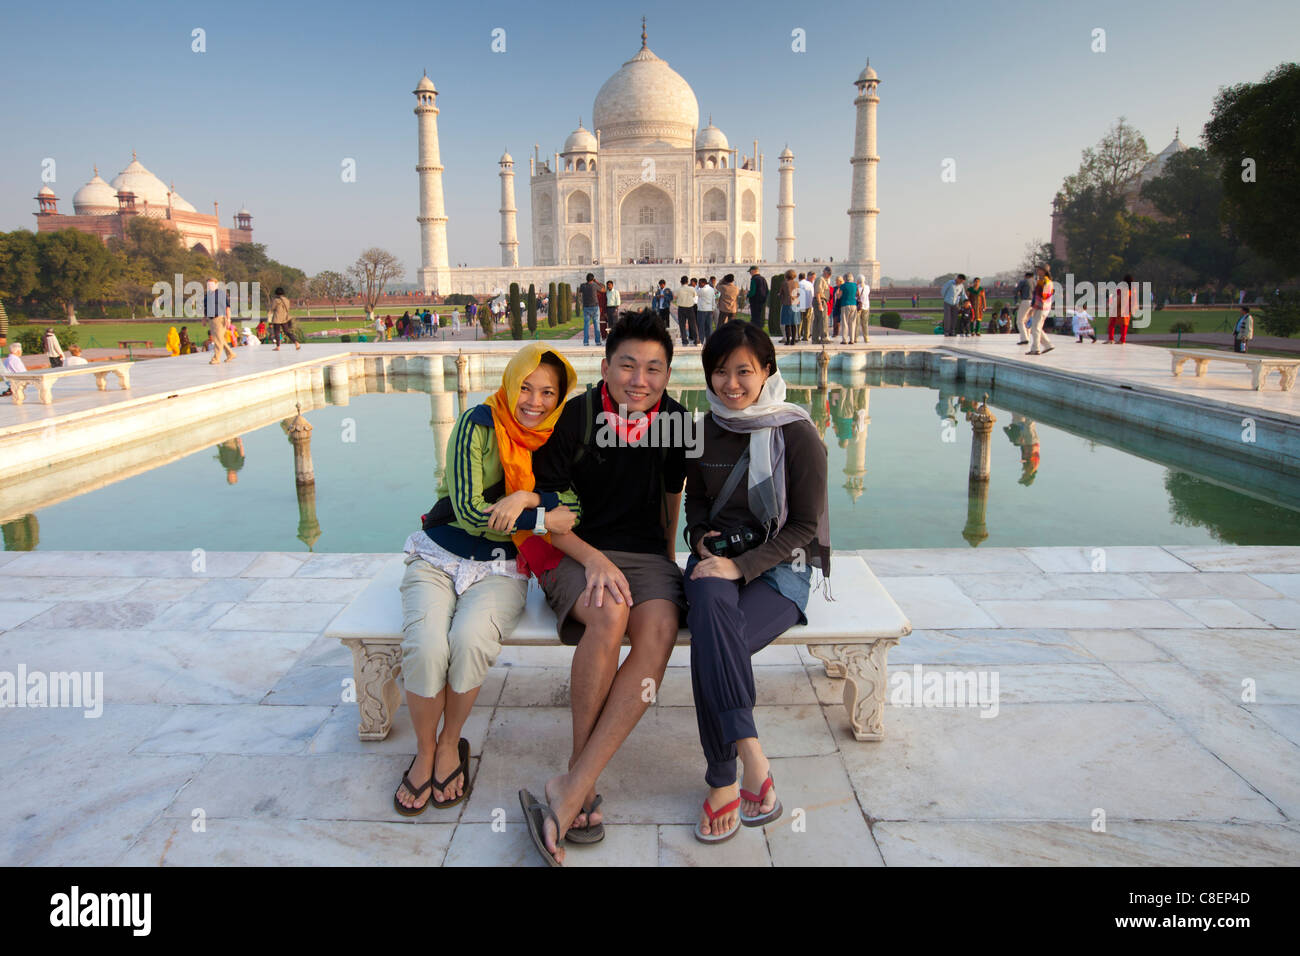 Les touristes s'asseoir sur Diana banc au Mausolée du Taj Mahal le sud avec miroir d'eau, de l'Uttar Pradesh, Inde Banque D'Images